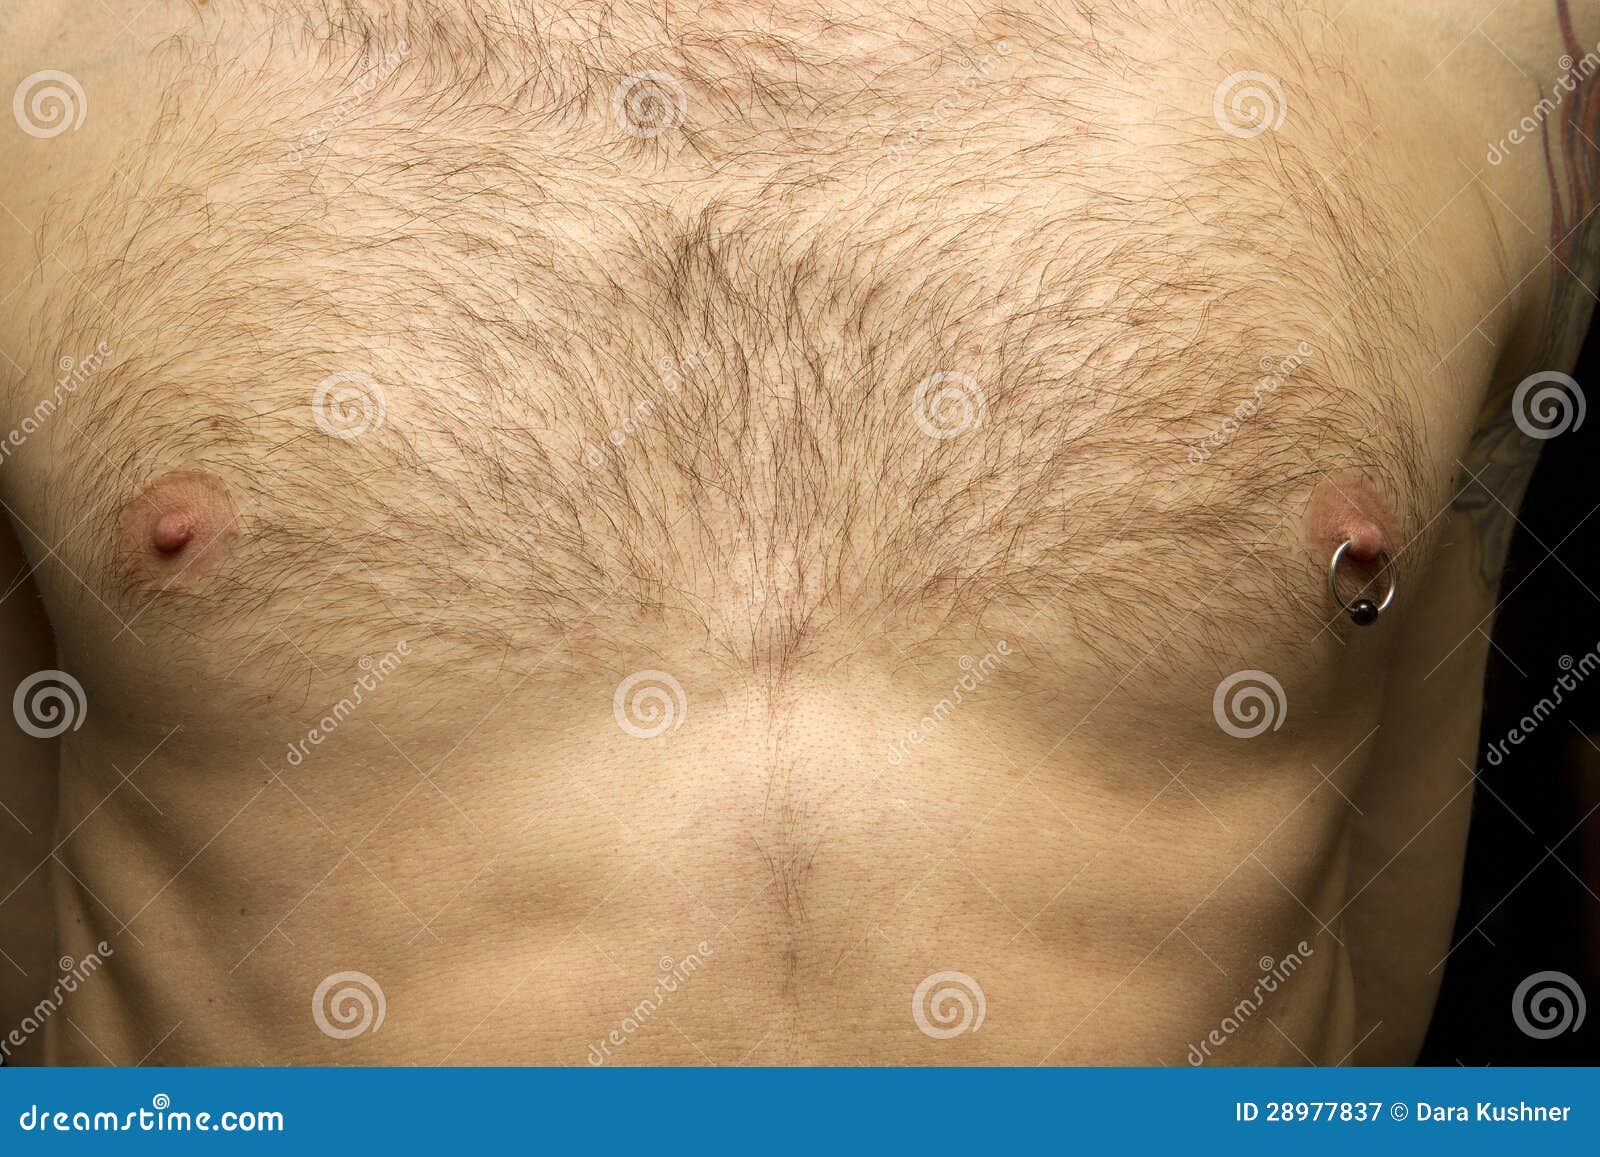 пирсинг на груди у мужчин фото 8